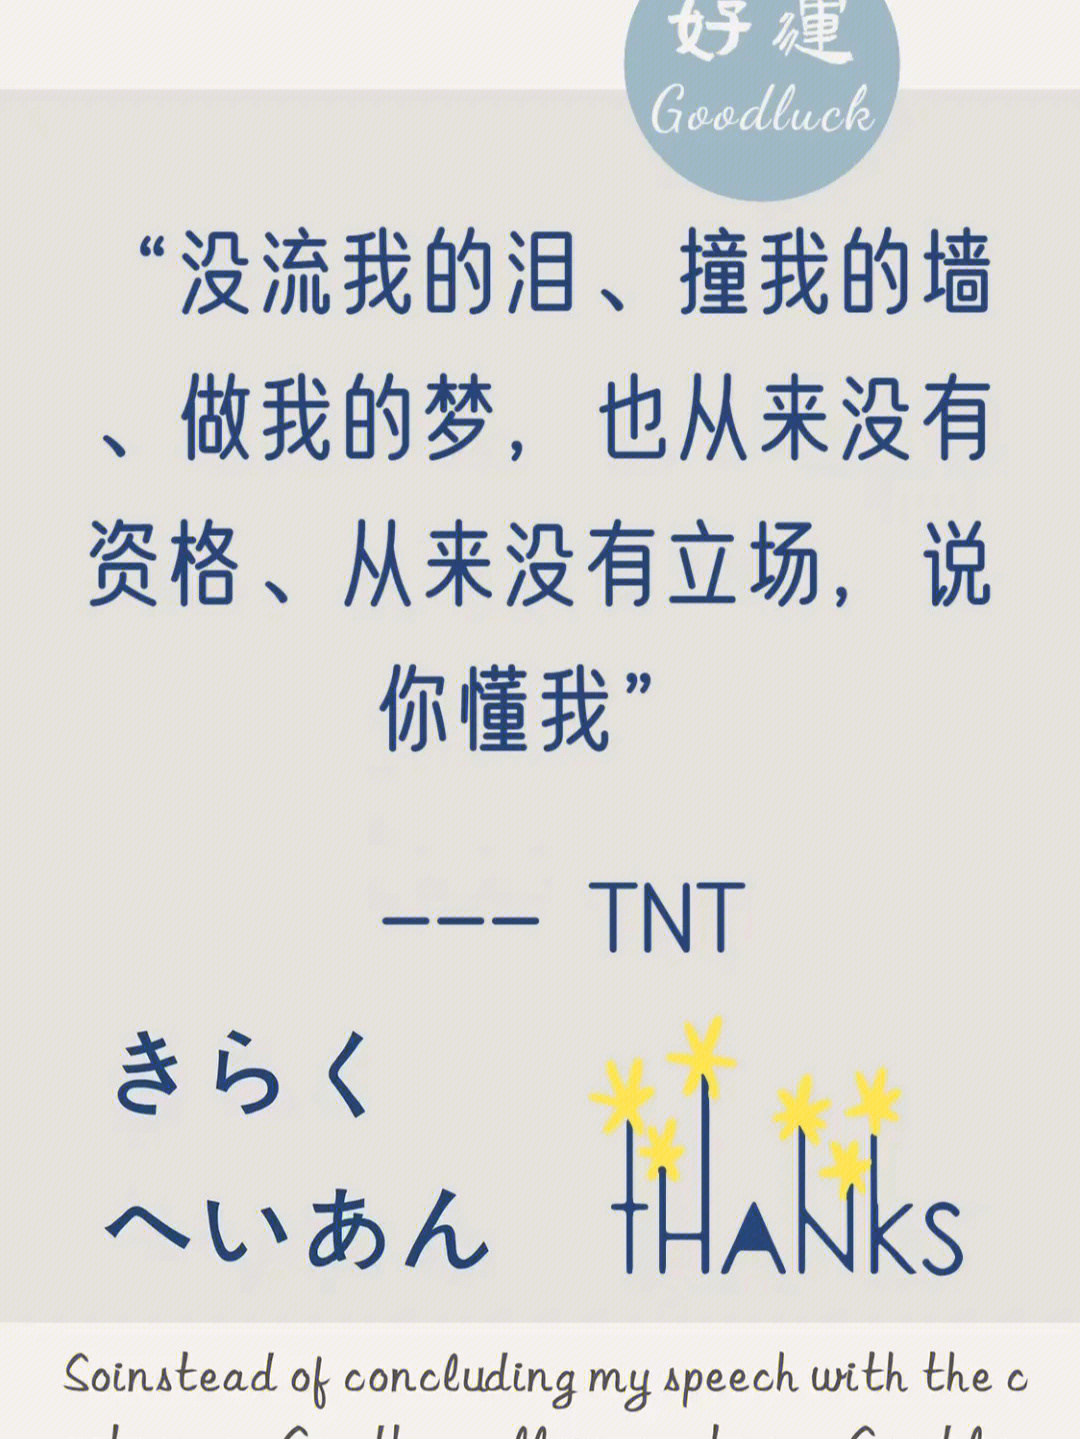 TNT神仙语录温柔图片